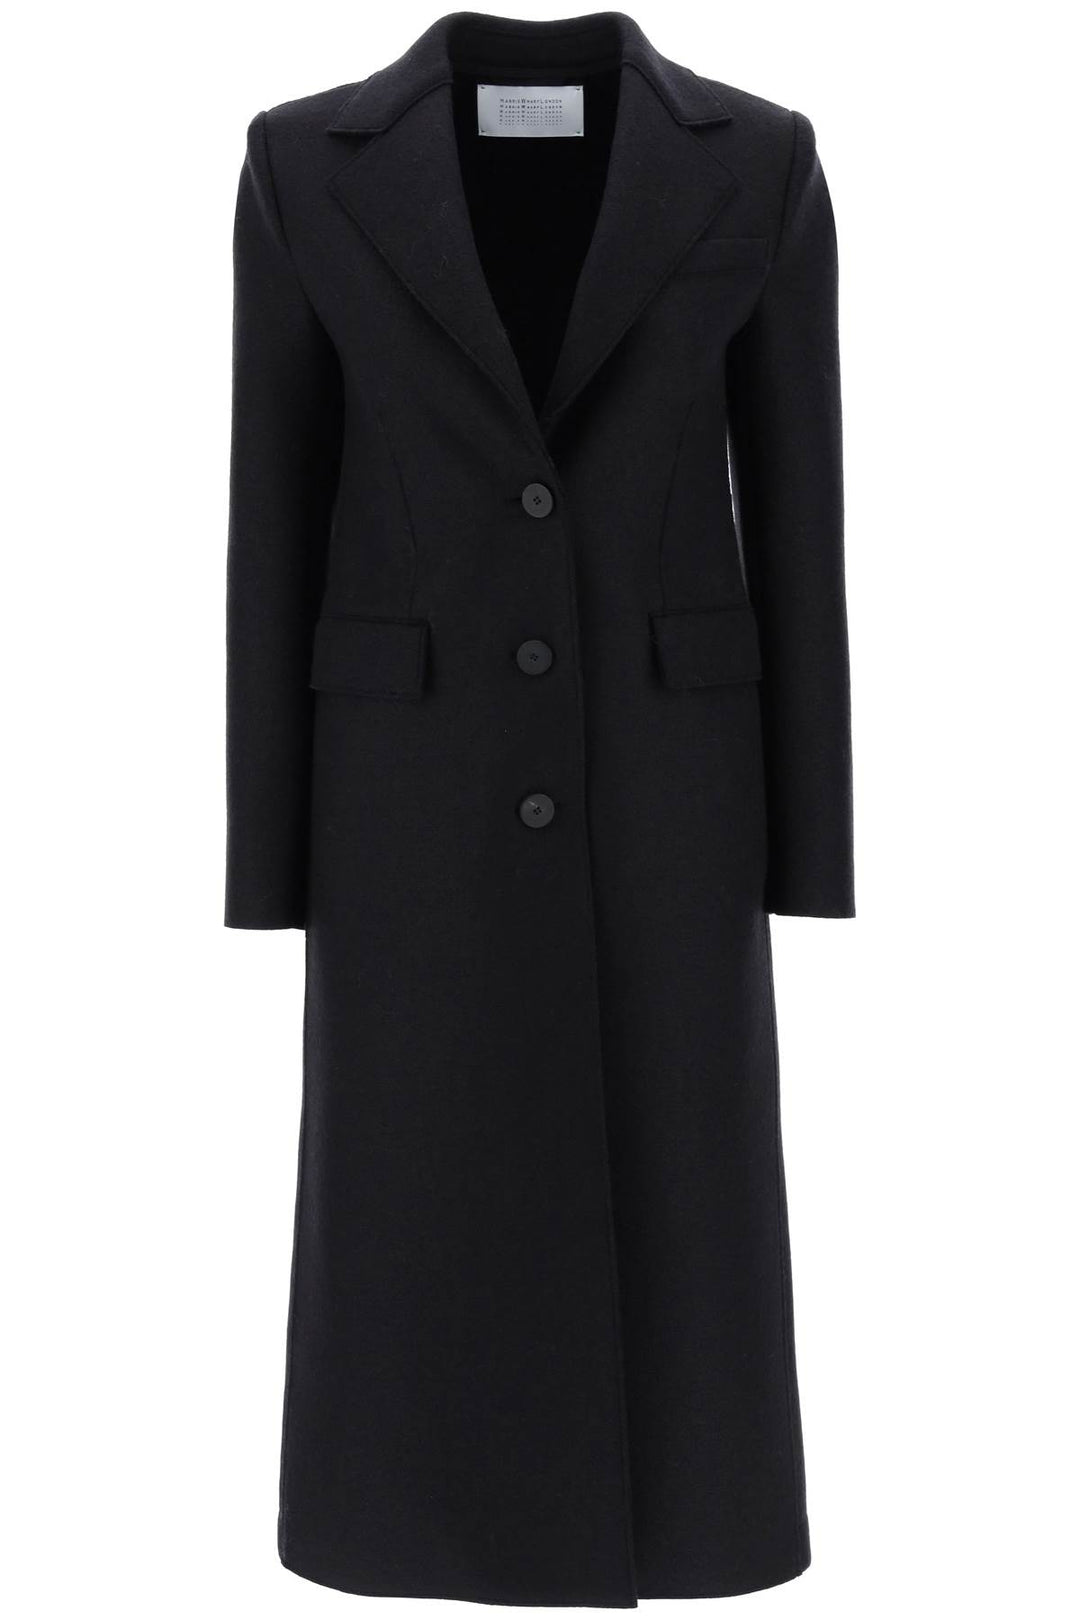 Cappotto Monopetto In Lana Pressata - Harris Wharf London - Donna